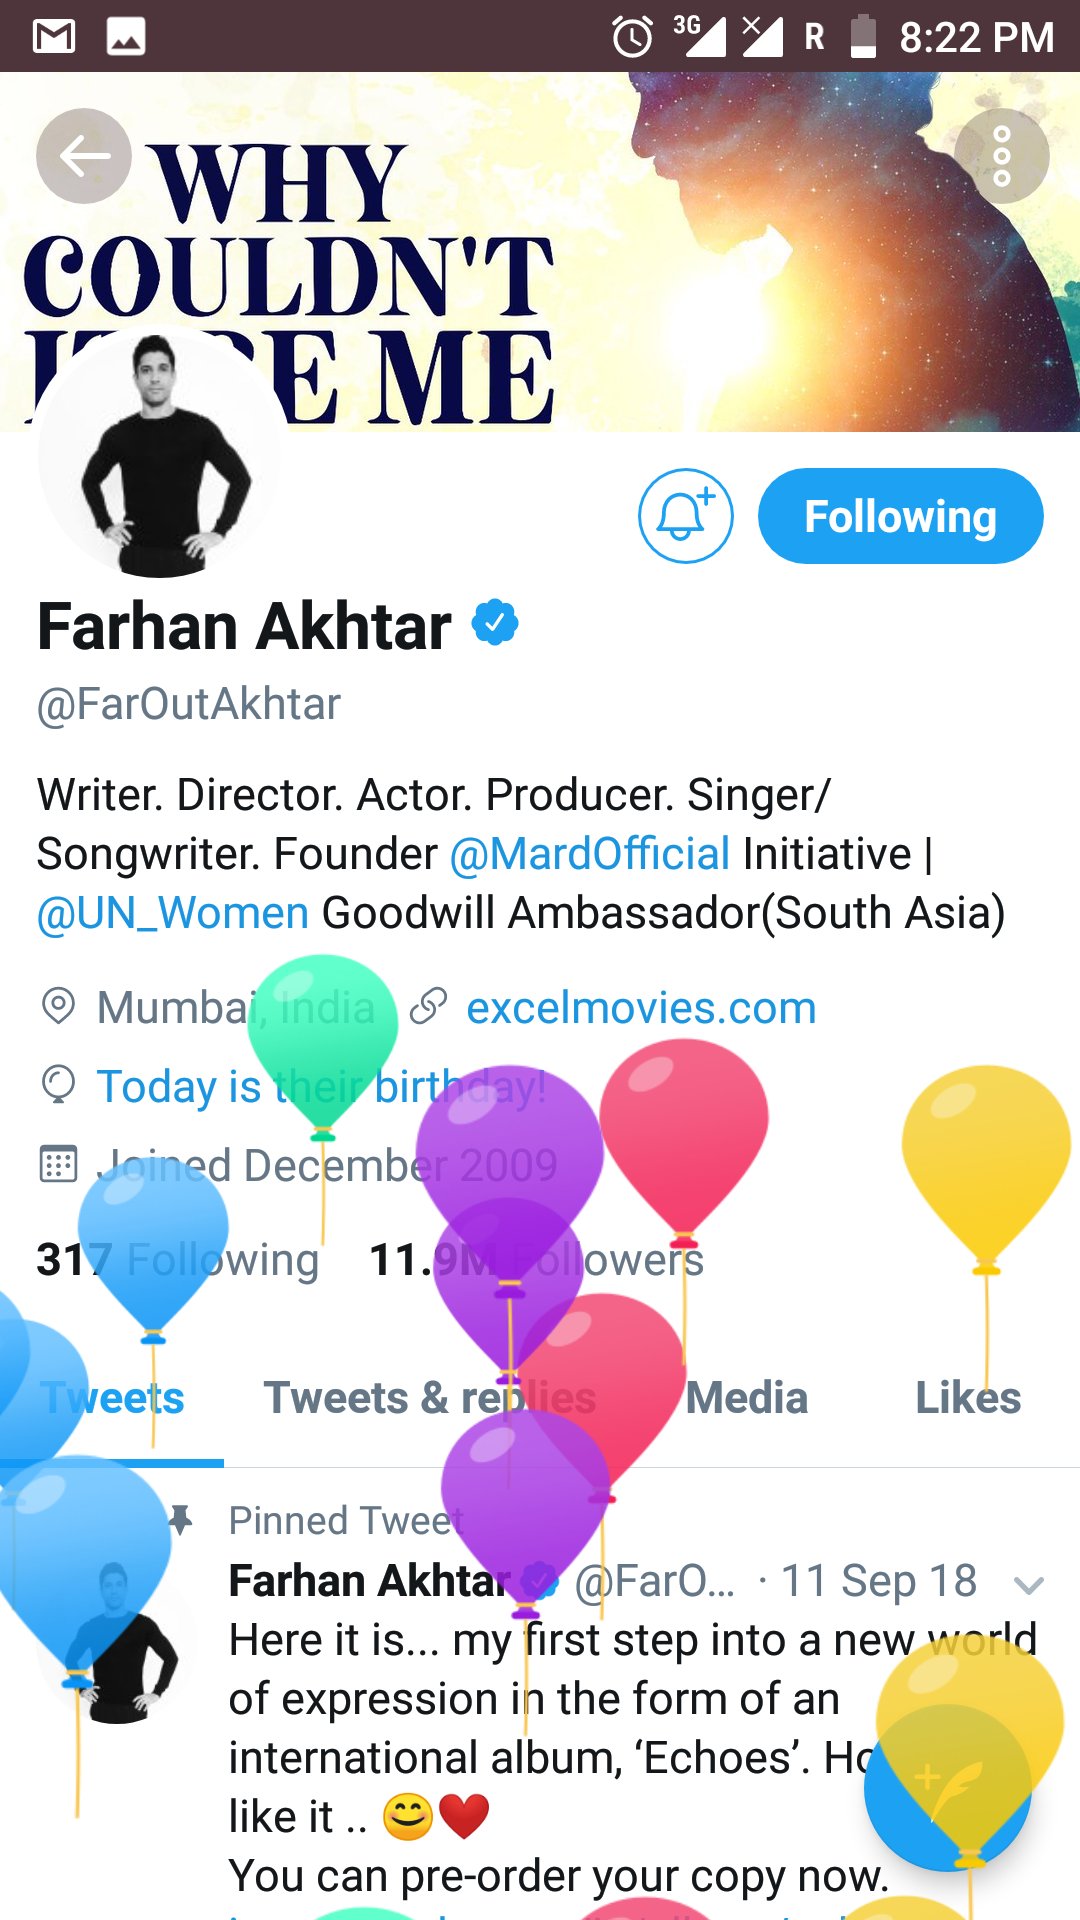  wish u a very happy birthday dear Farhan Akhtar... 